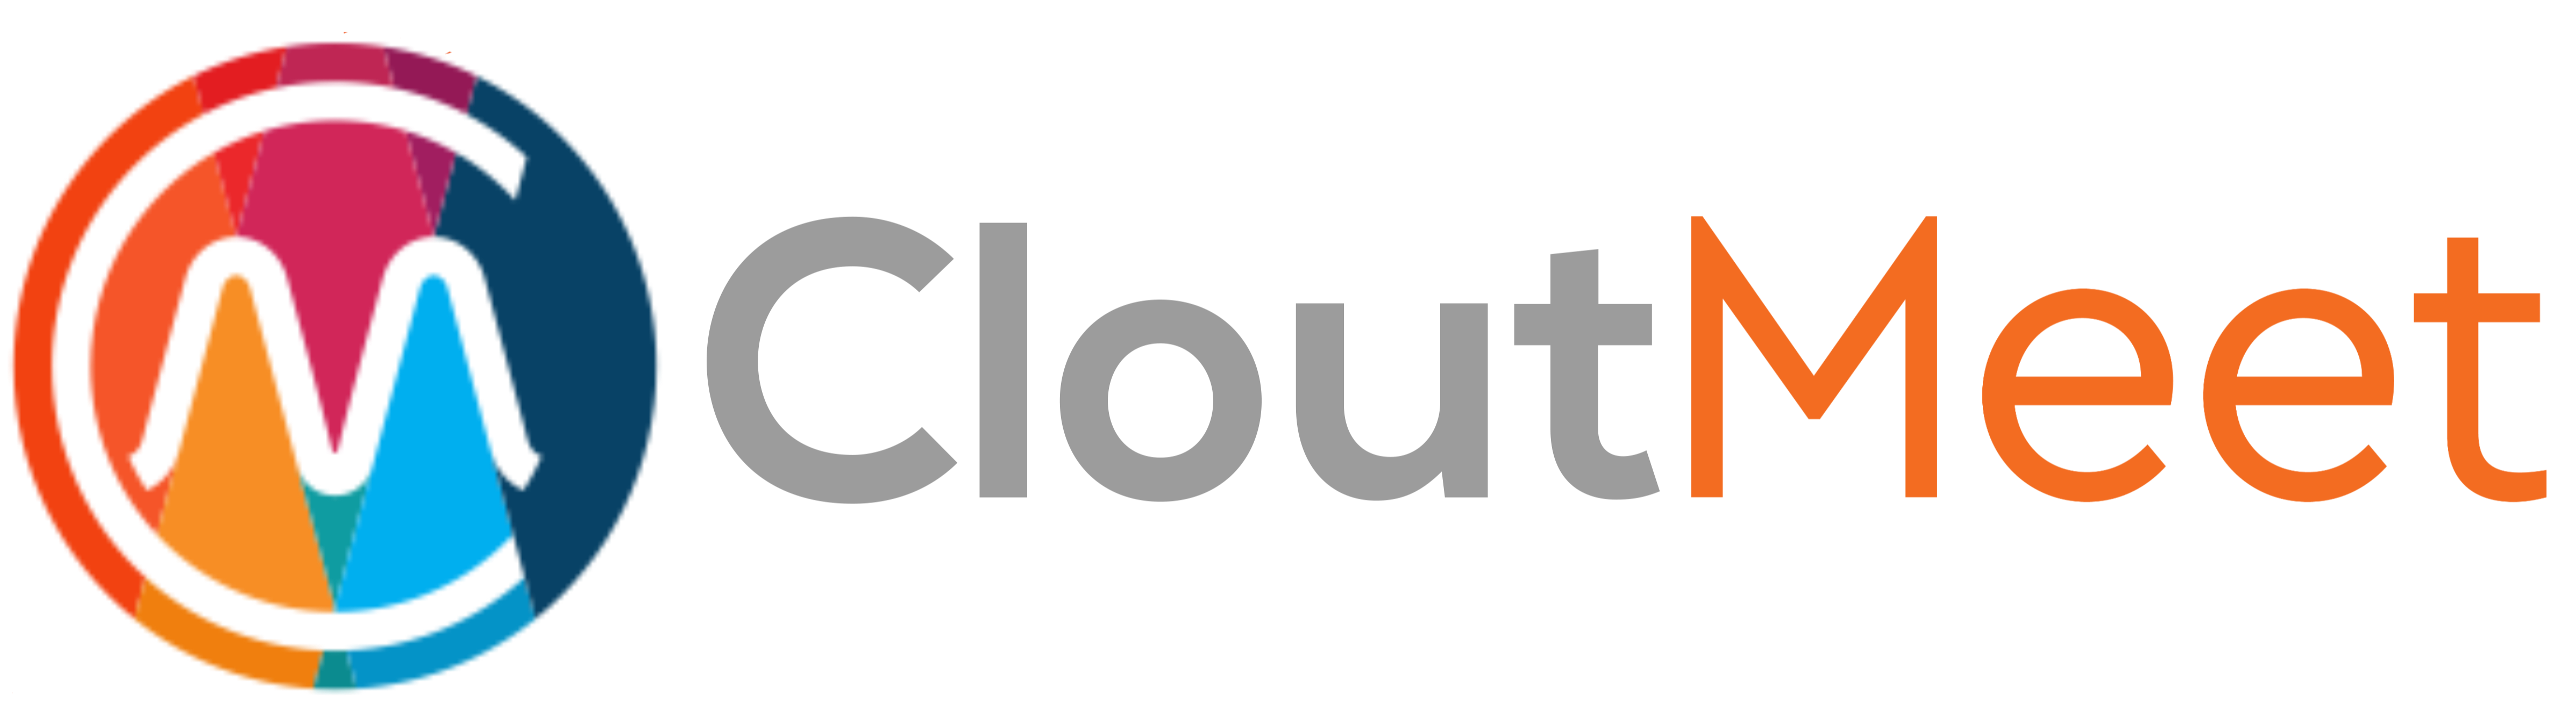 App - CloutMeet